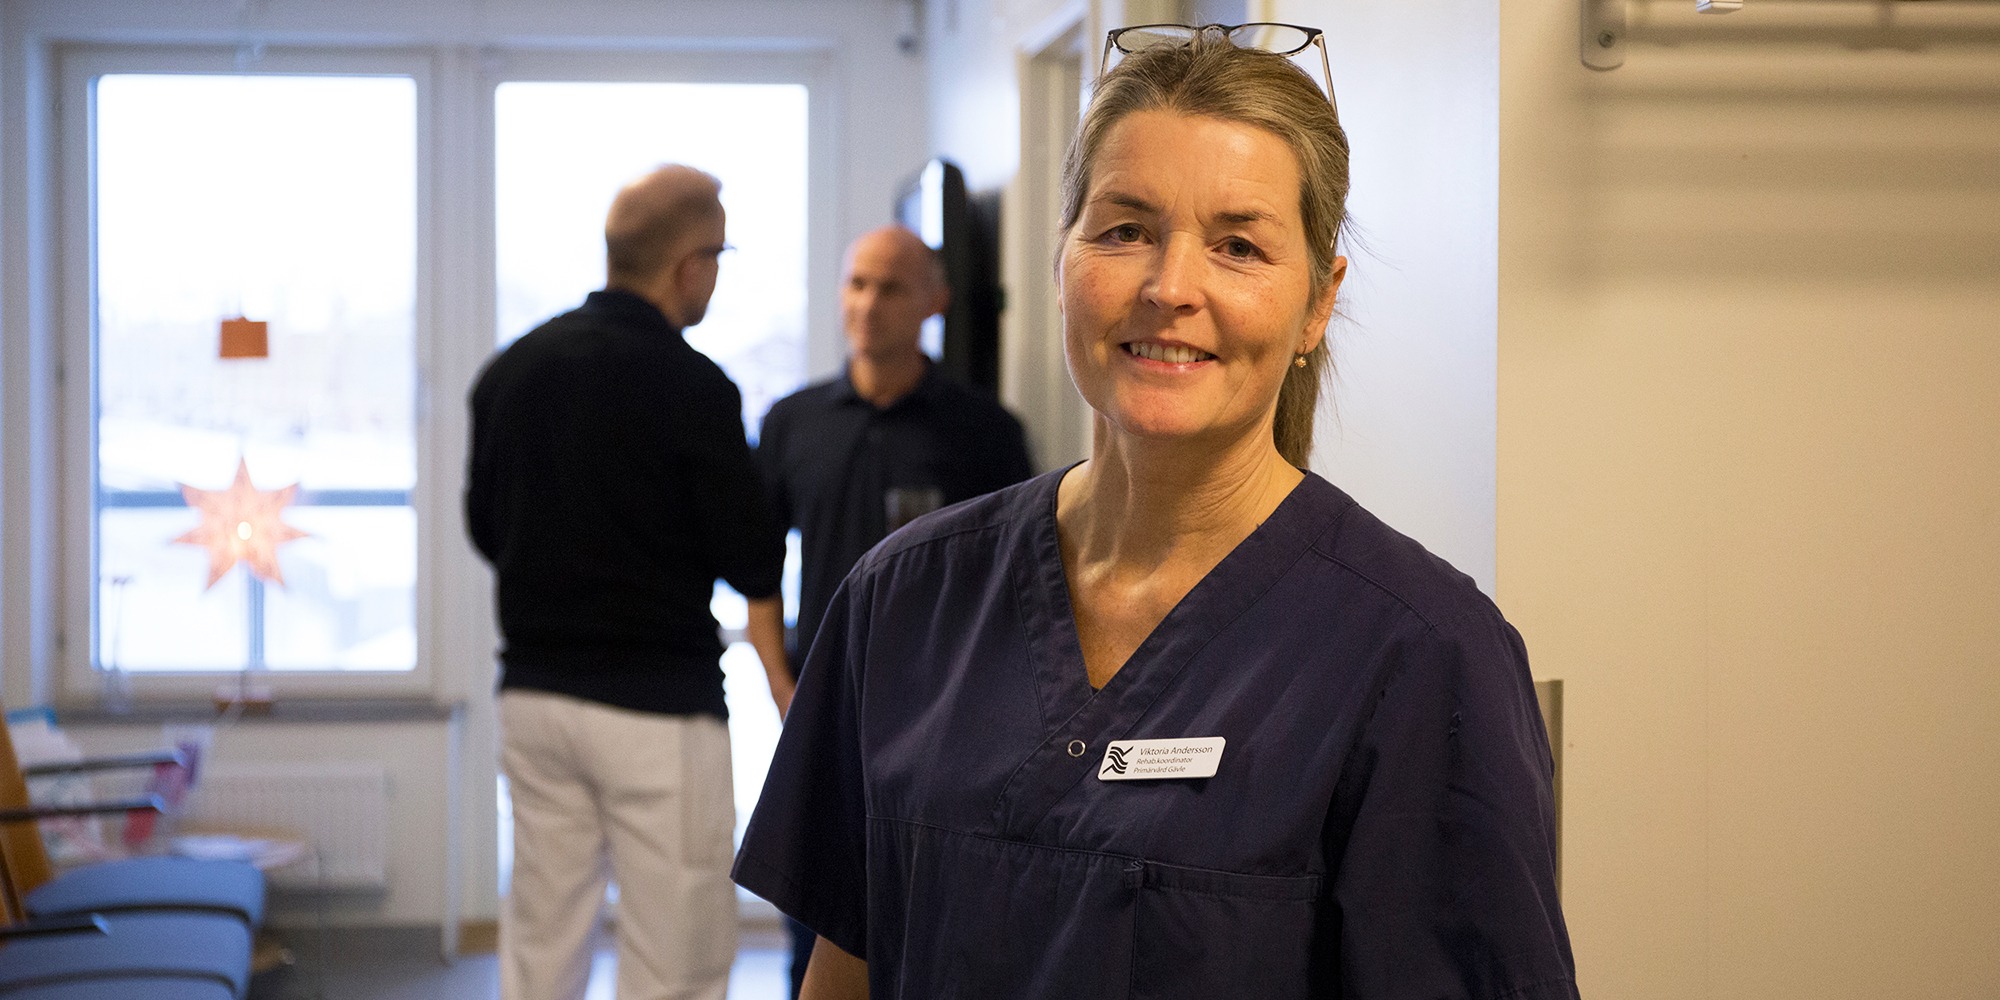 Porträtt på Viktoria Andersson, rehabkoordinator på Gävle Strands hälsocentral. Viktoria har en märk sjukhusblus på sig och står i en korridor på hälsocentralen, med ett par personer i bakgrunden.